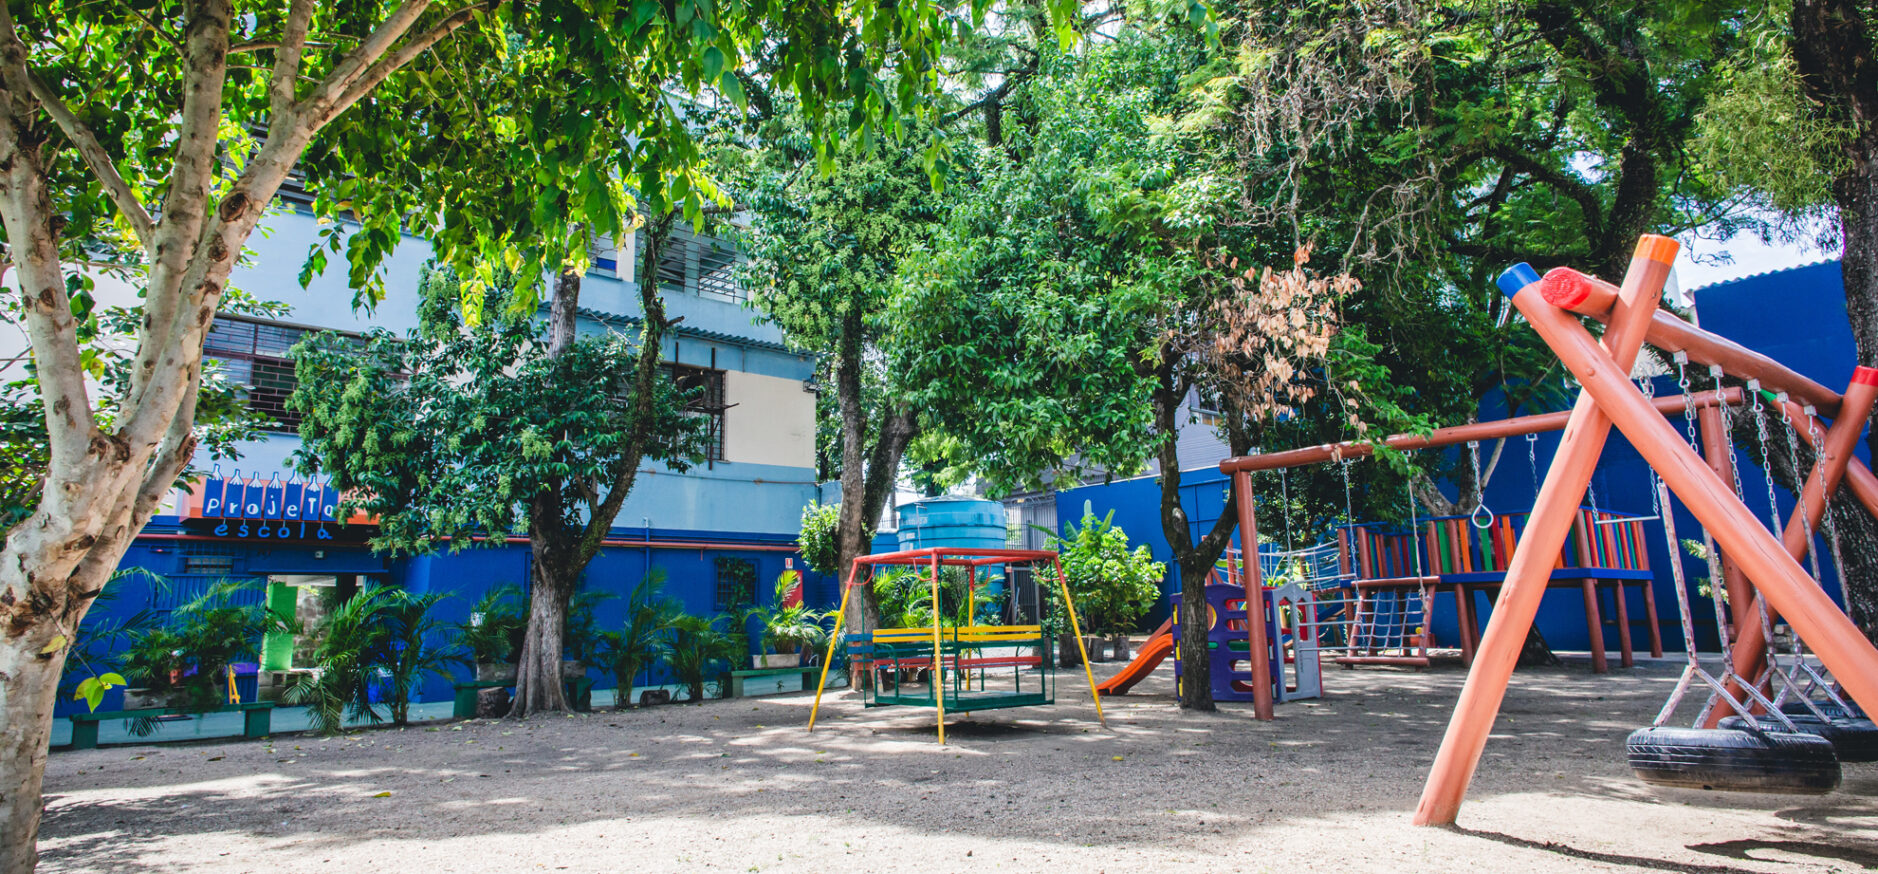 Educação Infantil Jardim 2 - Nossa Escola Educação Infantil - Ipiranga - SP